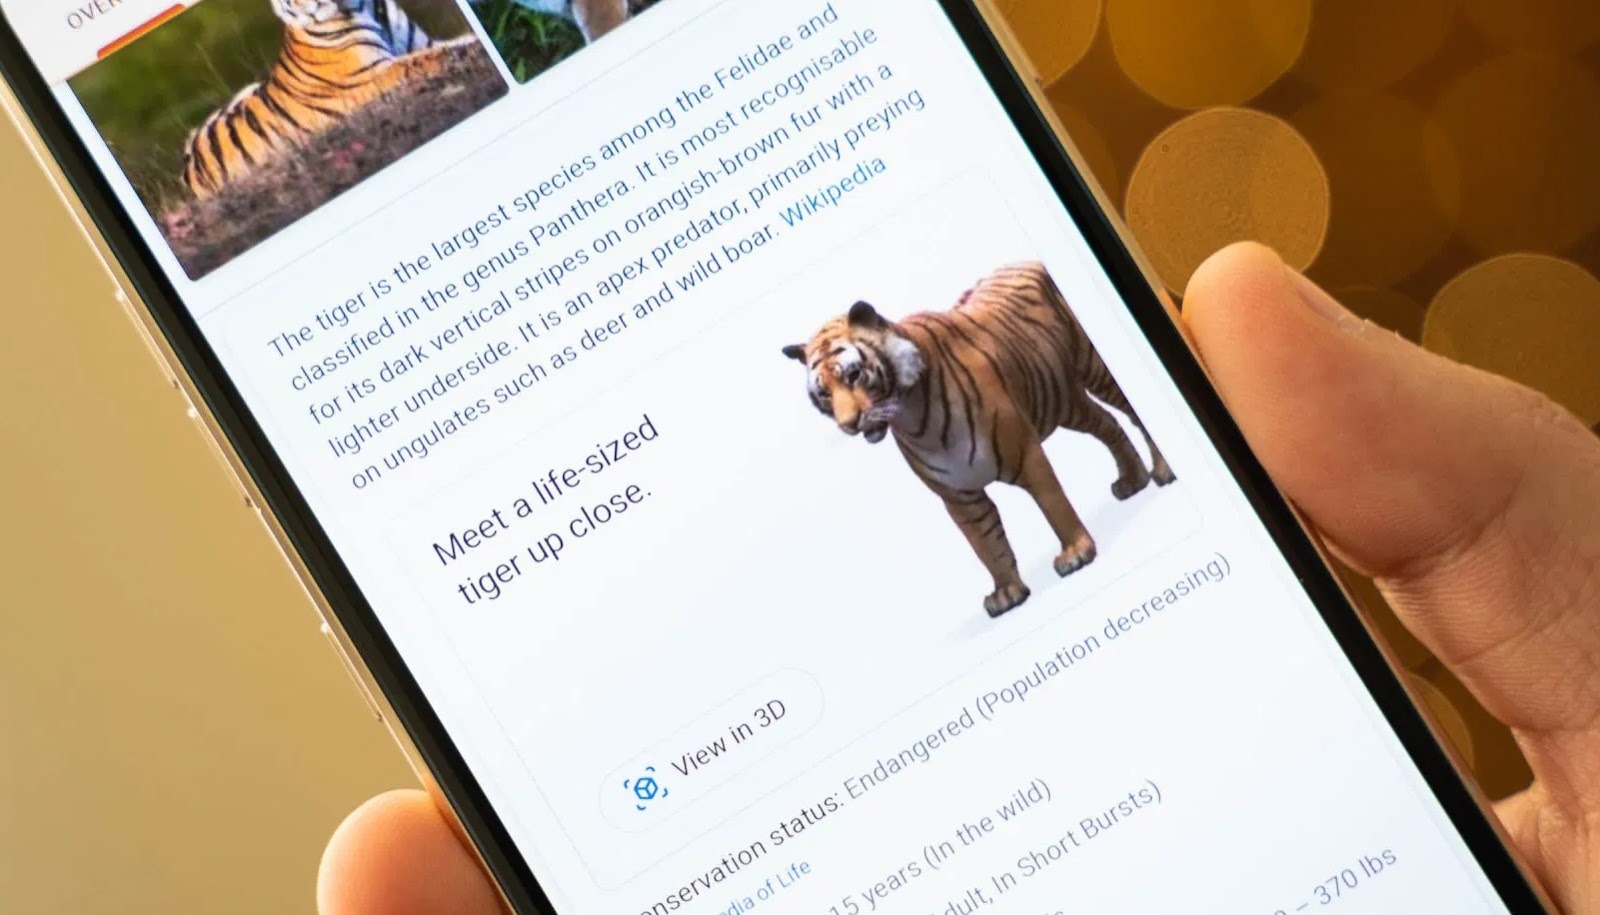 Busca do Google tem novos animais em 3D realidade aumentada